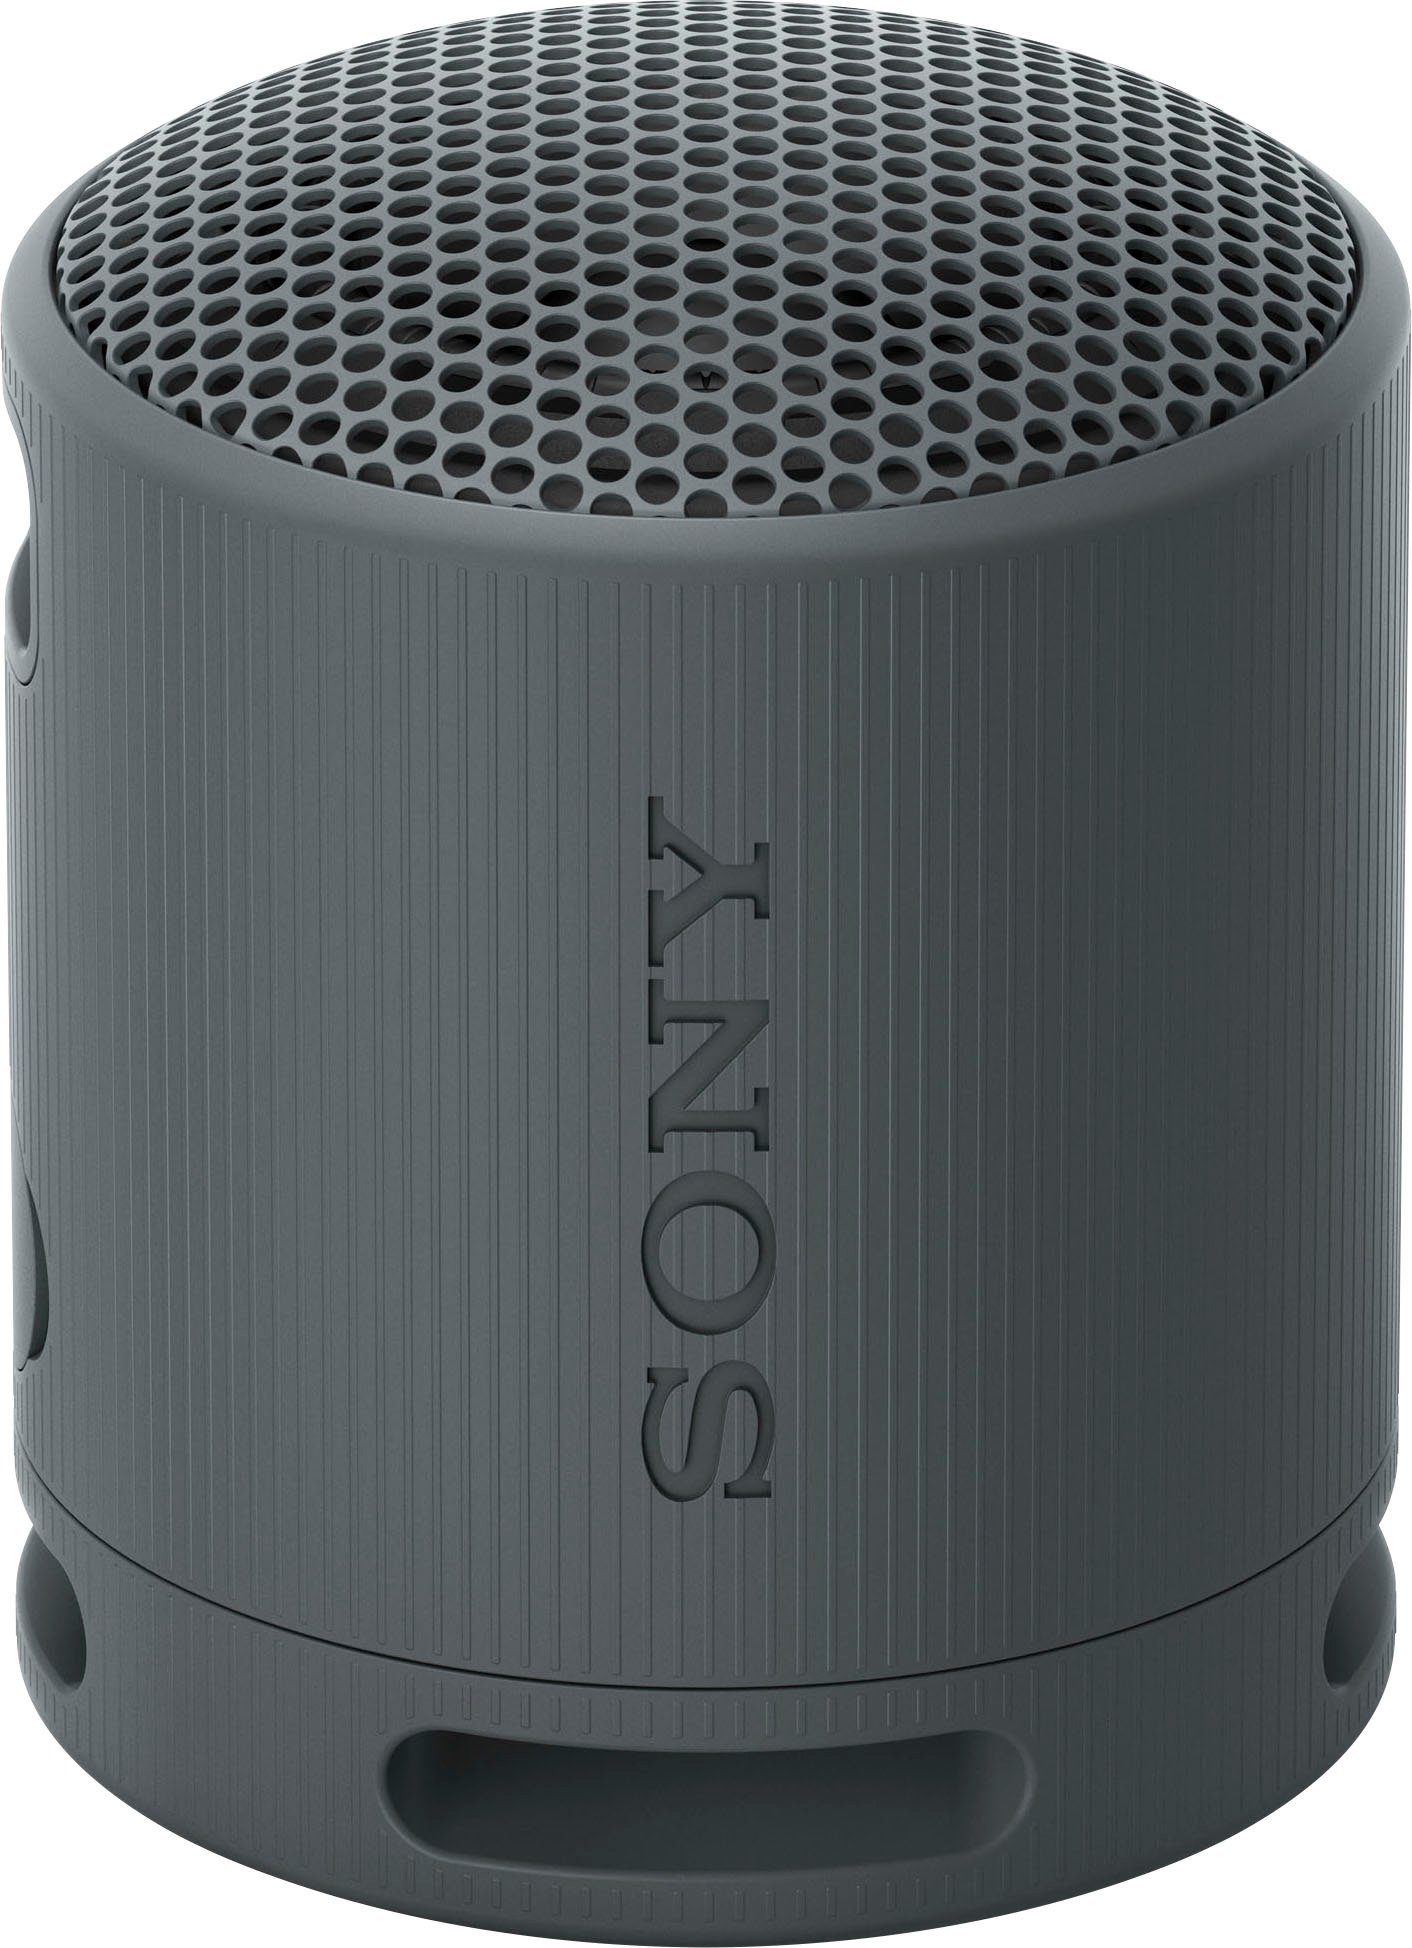 Sony SRS-XB100 Stereo Bluetooth-Lautsprecher (Bluetooth, staubdicht, 16-Std.-Akku, schwarz und Kabellos, umweltfreundlich) wasser